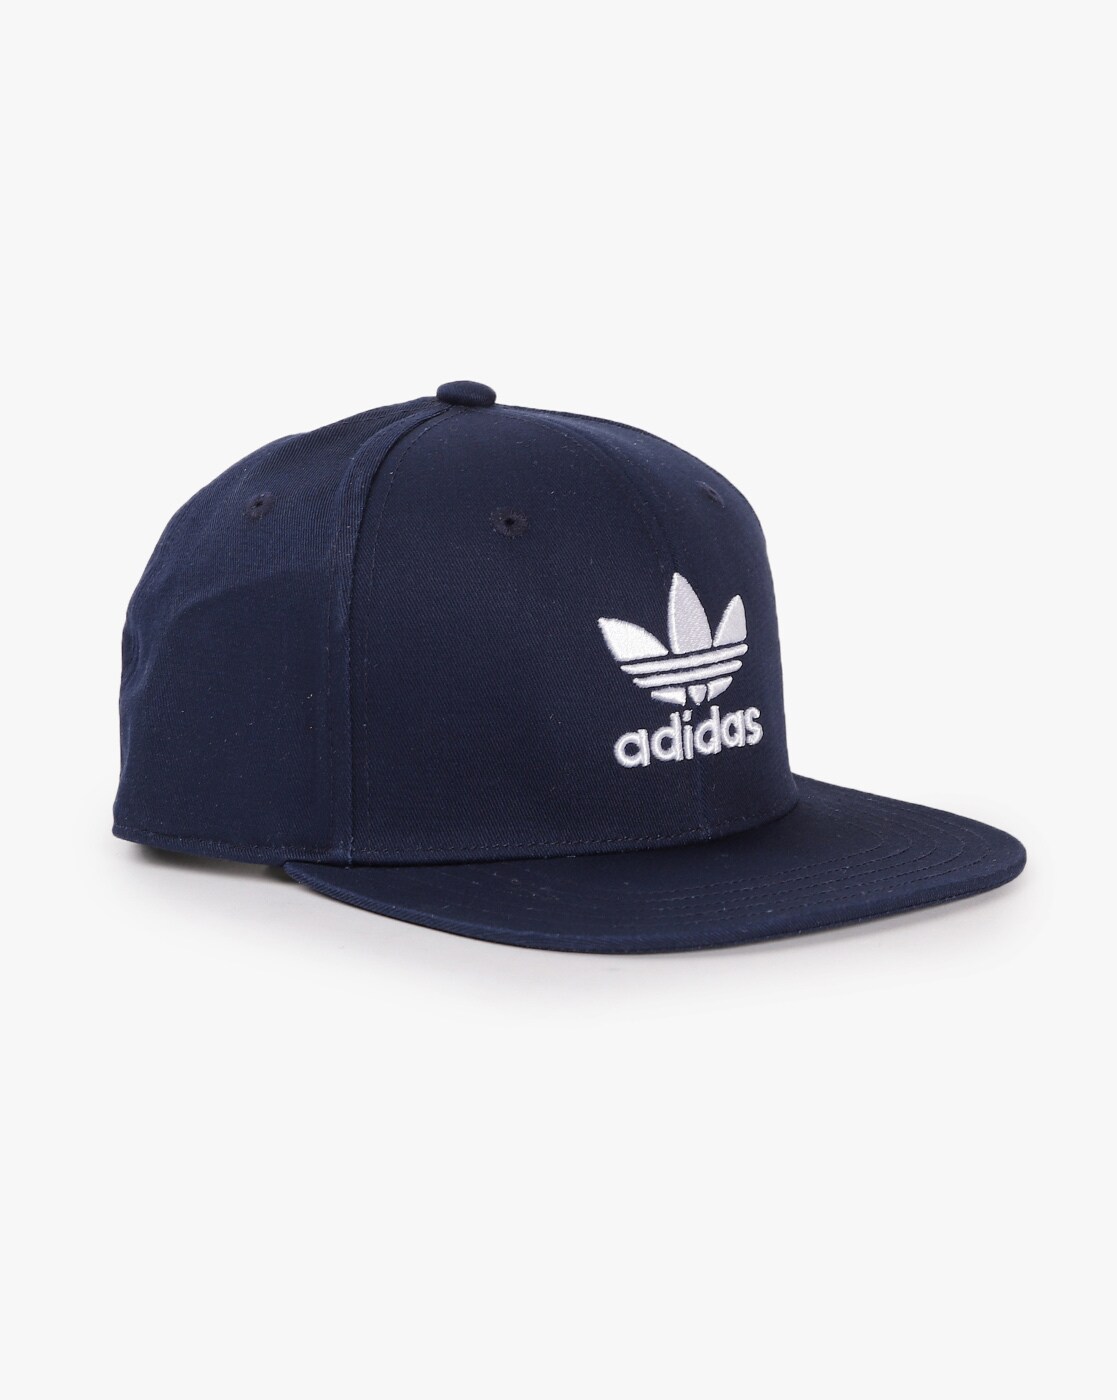 Caps \u0026 Hats for Men by Adidas Originals 